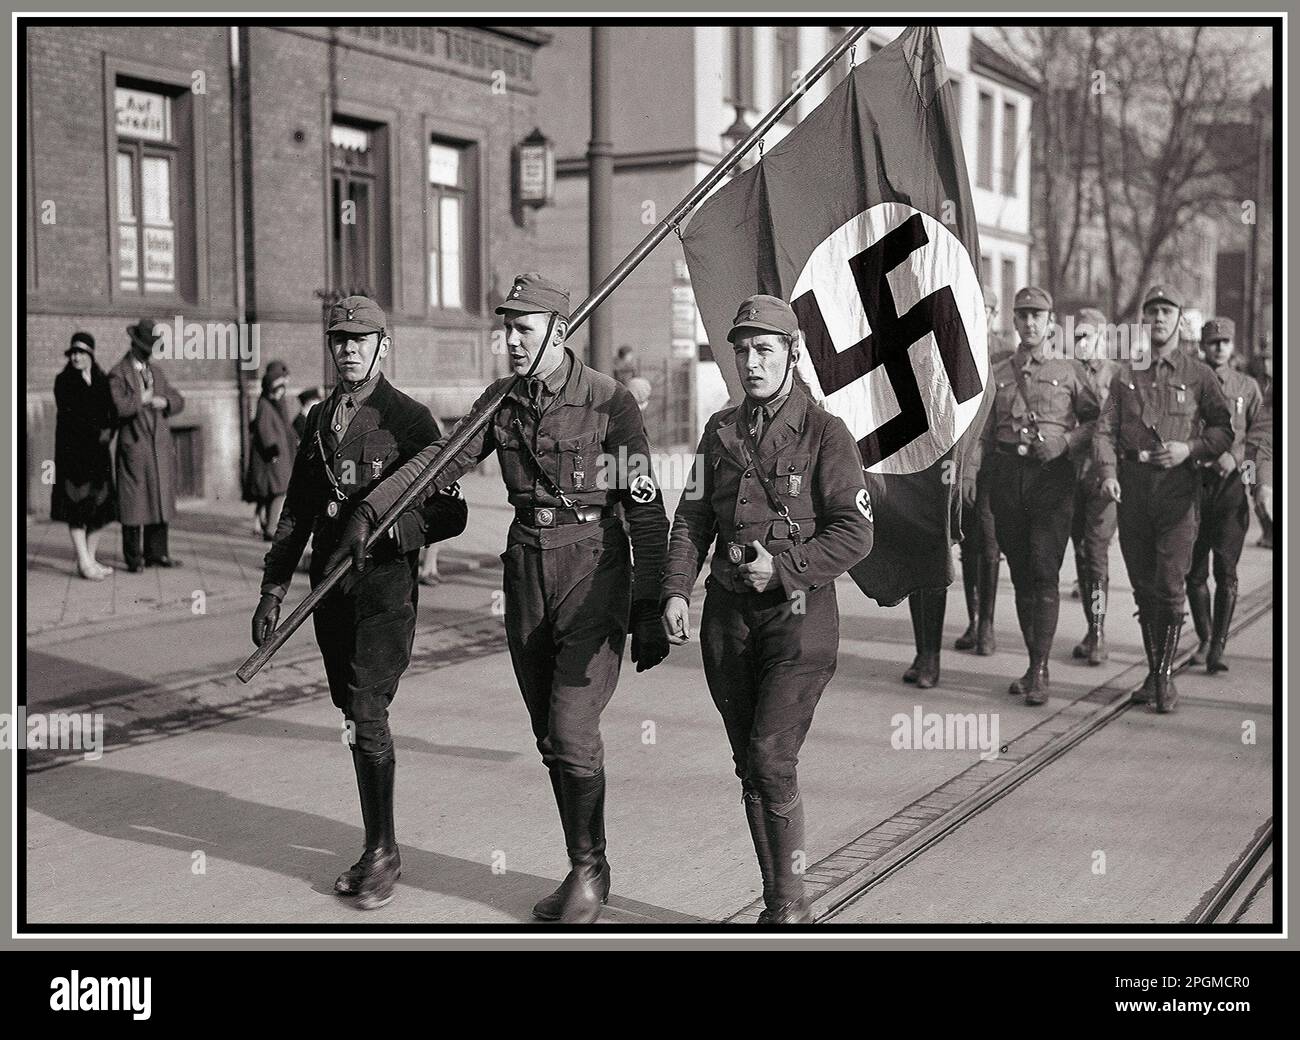 Deutsche Nazi-SA-Männer in Parade, Braunschweig, Nazi-Deutschland, 1932. April, mit Swastika-Flagge, die Soldaten der Nazi-Sturmabteilung der SA transportiert, marschieren durch eine deutsche Stadt im 1932. Nazi-Deutschland Stockfoto